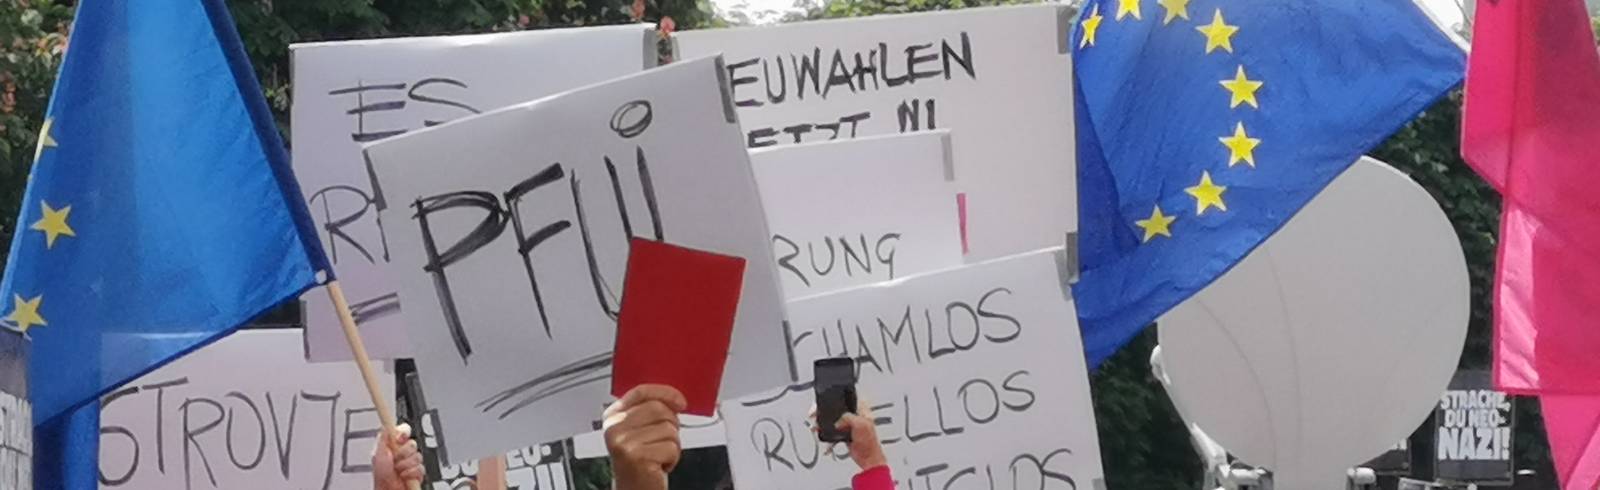 FPÖ: Aufgebrachte Demo vor dem Bundeskanzleramt